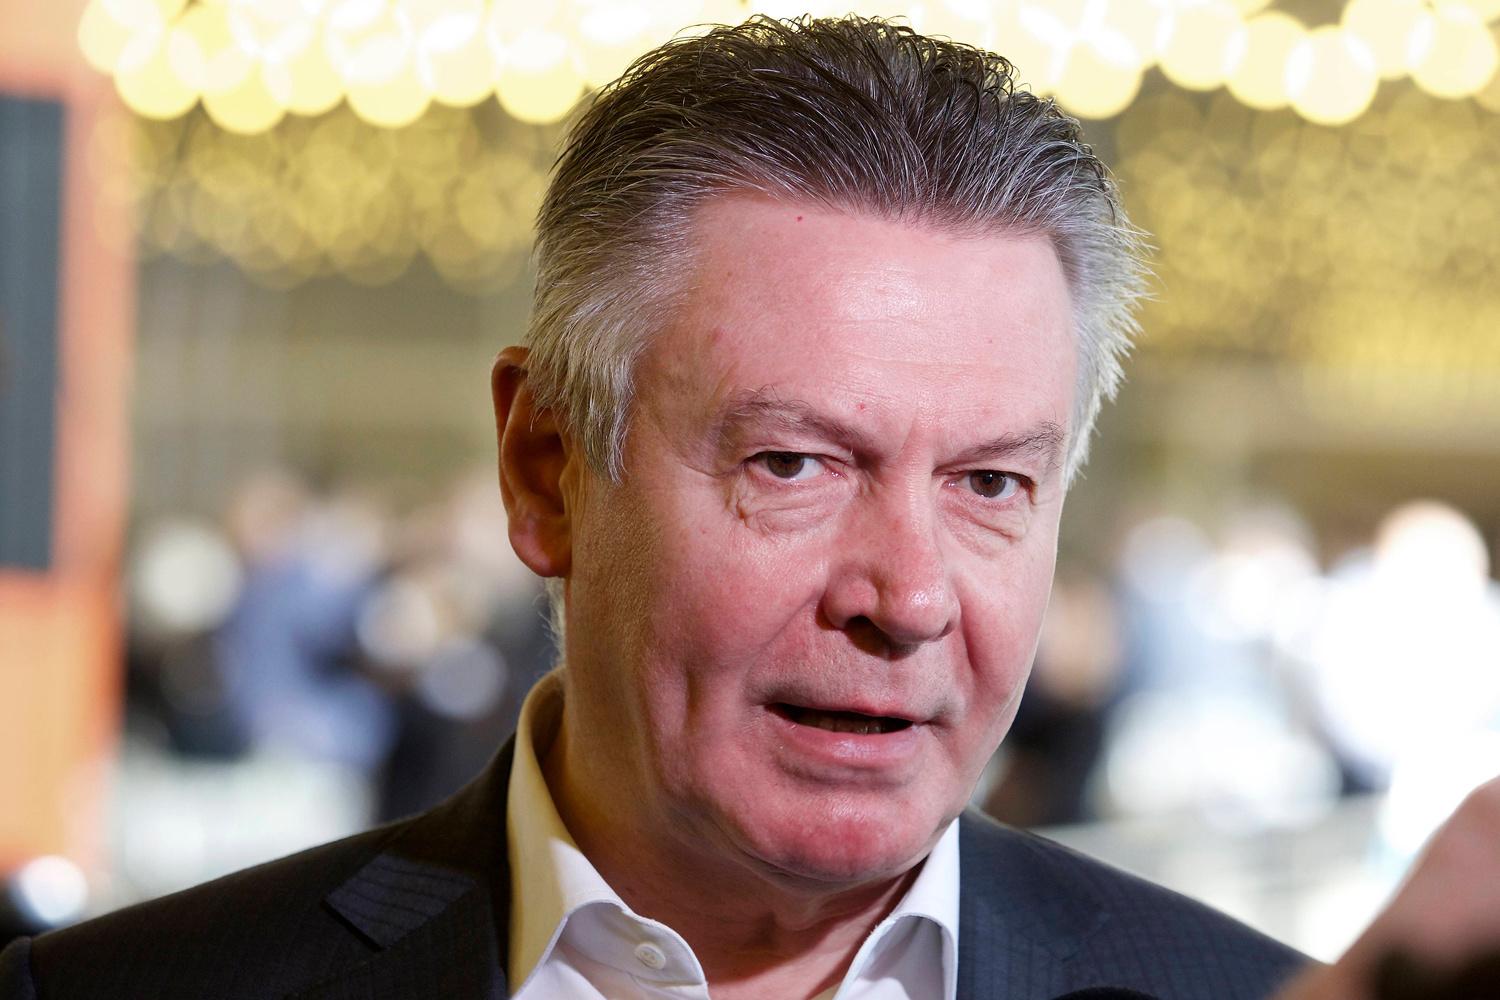 Karel De Gucht